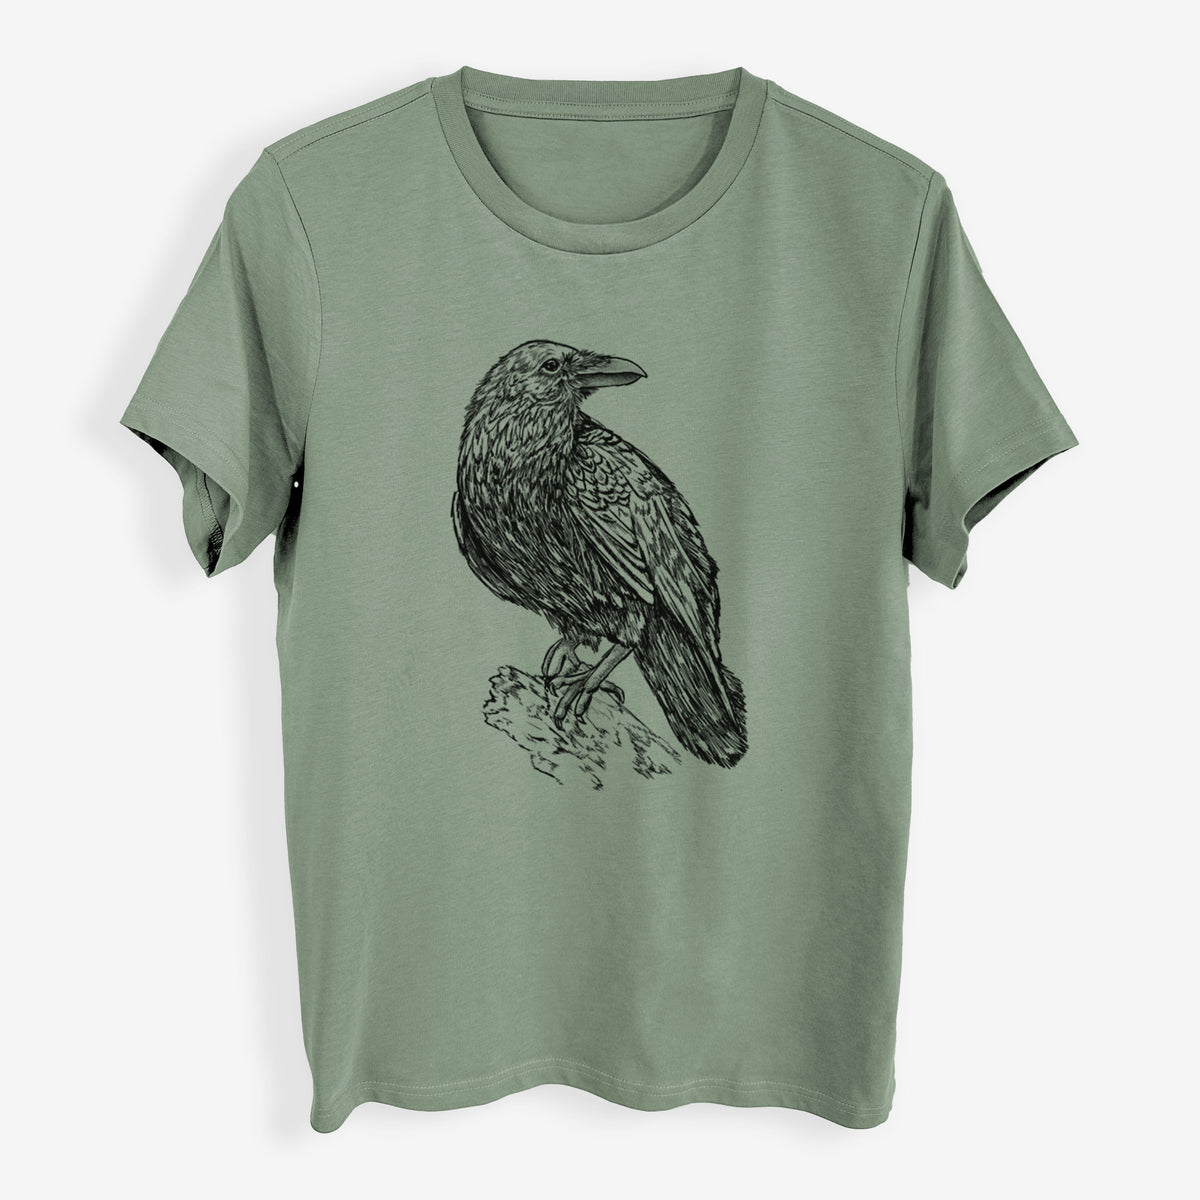 Corvus corax - Common Raven - Womens Everyday Maple Tee